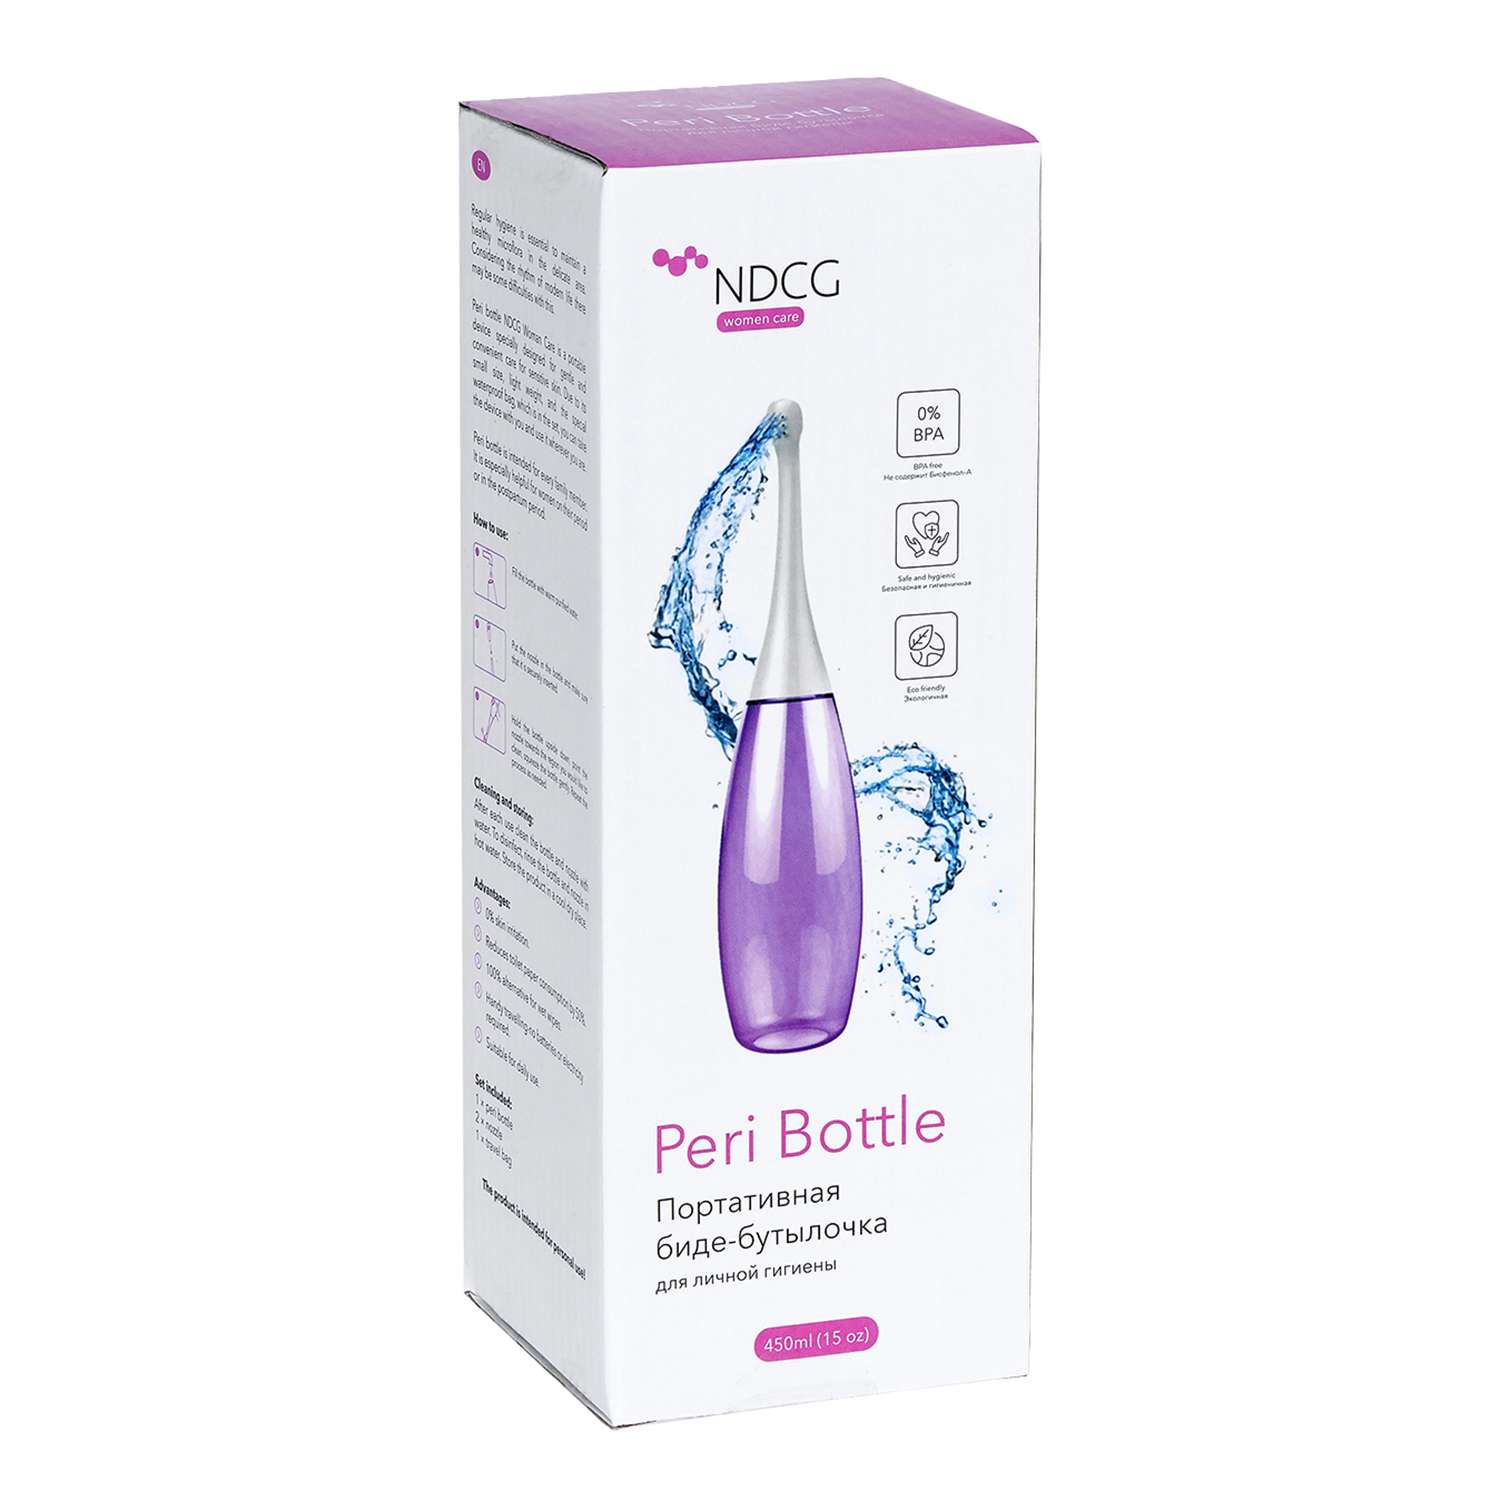 Биде бутылочка NDCG для личной гигиены портативная розовый - фото 8